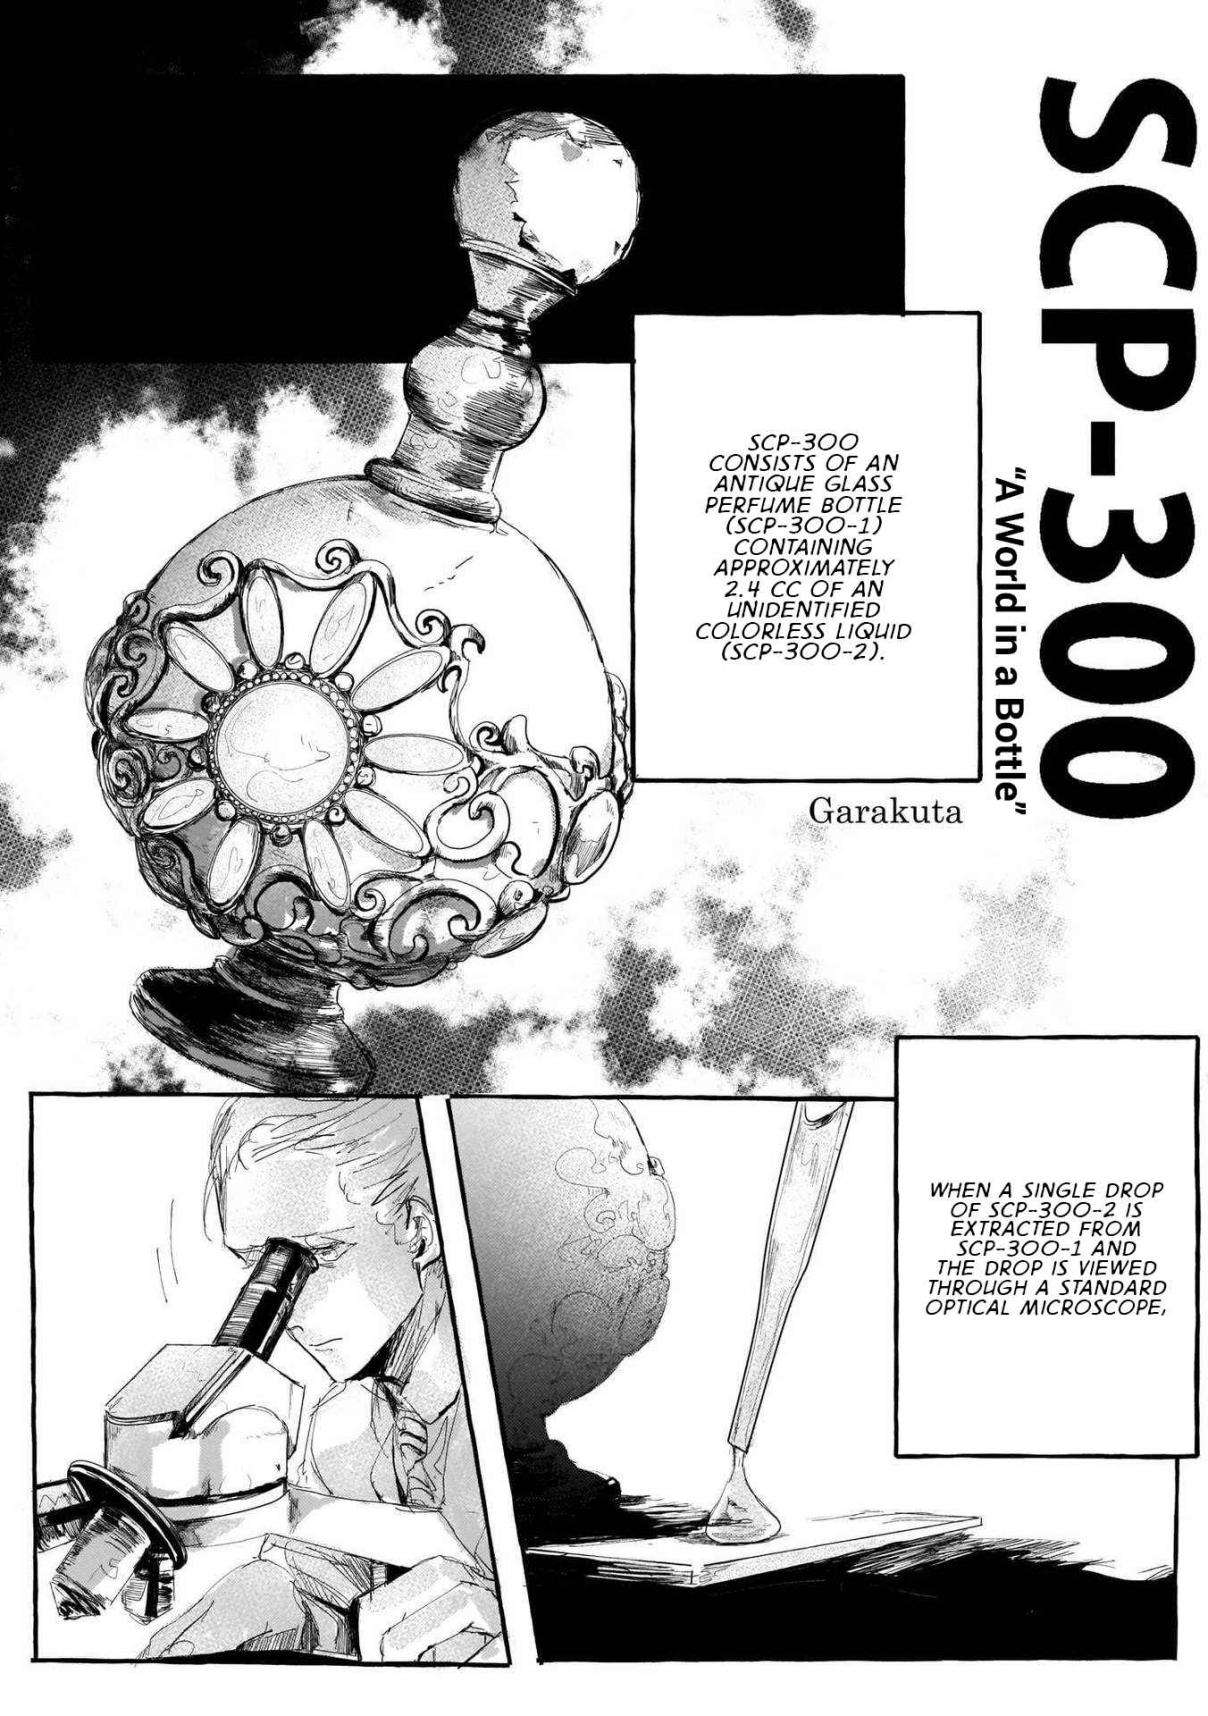 SCP Comic Anthology KAI Vol. 1 Ch. 3 SCP 300 "A World in a Bottle” (Garakuta)